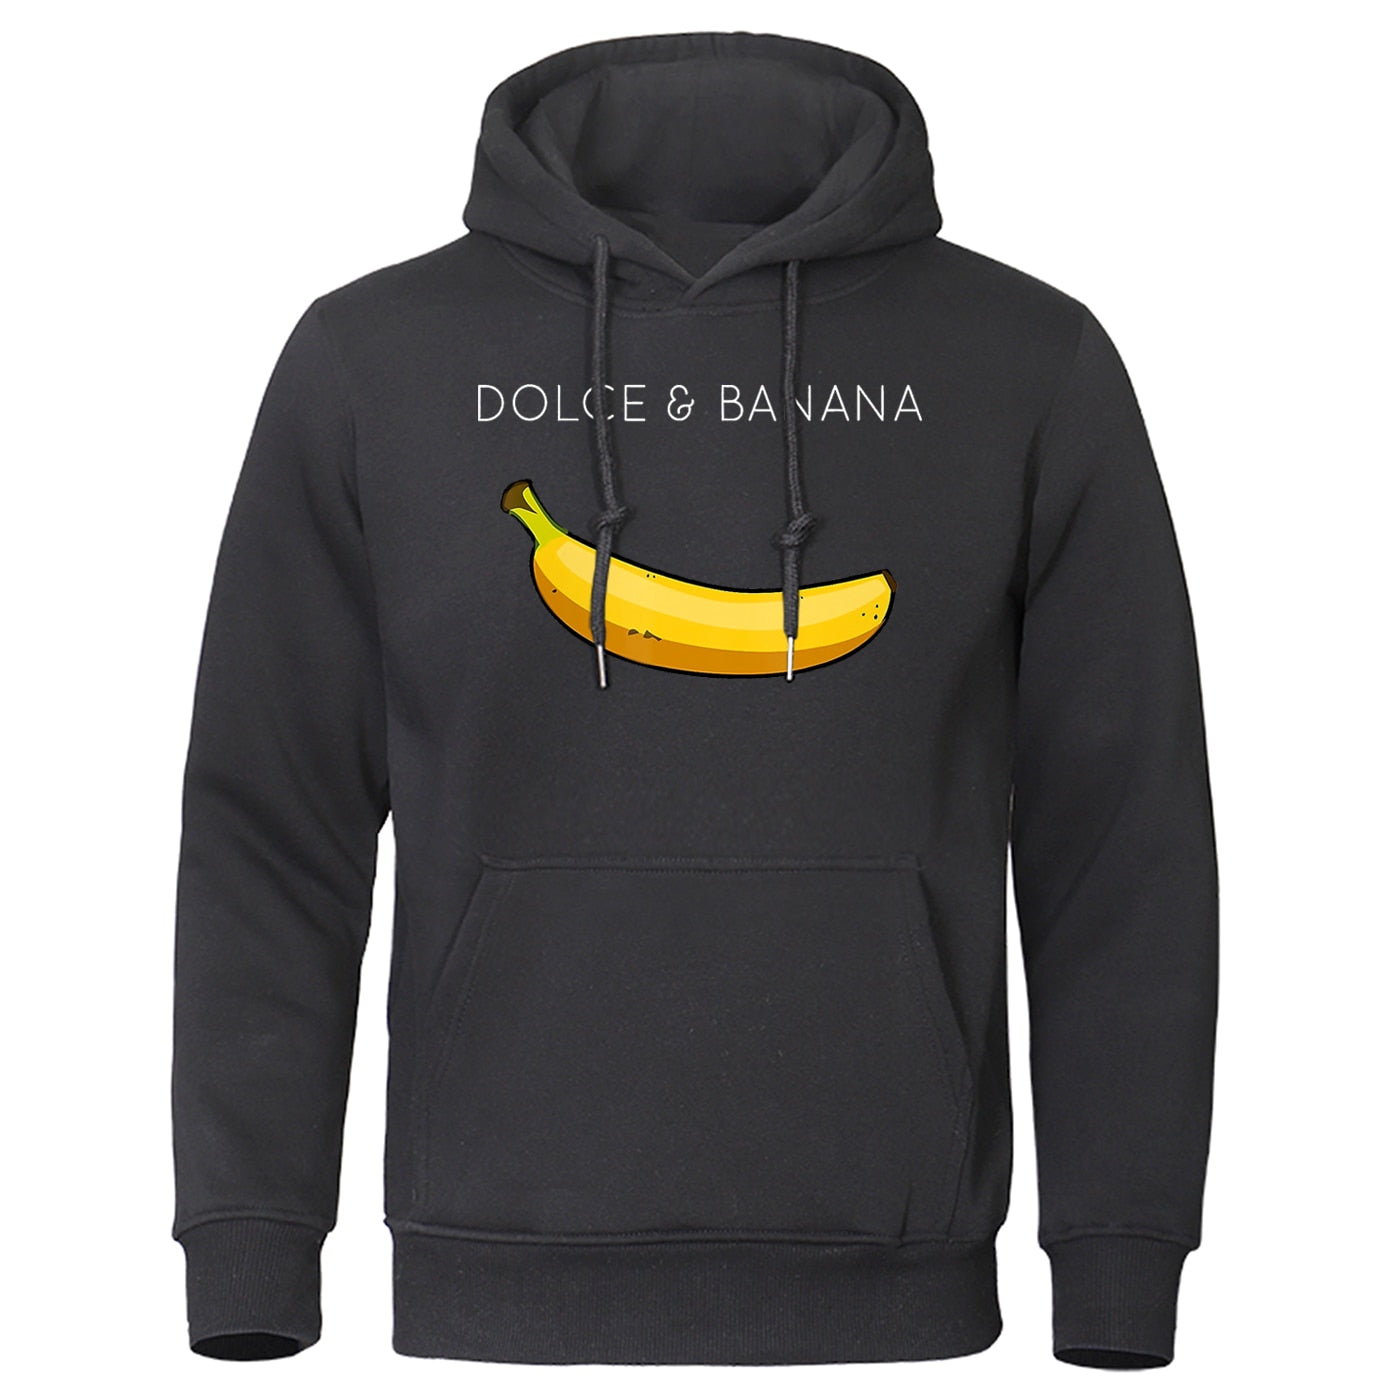 Dolce & Banana Casual Hoodies